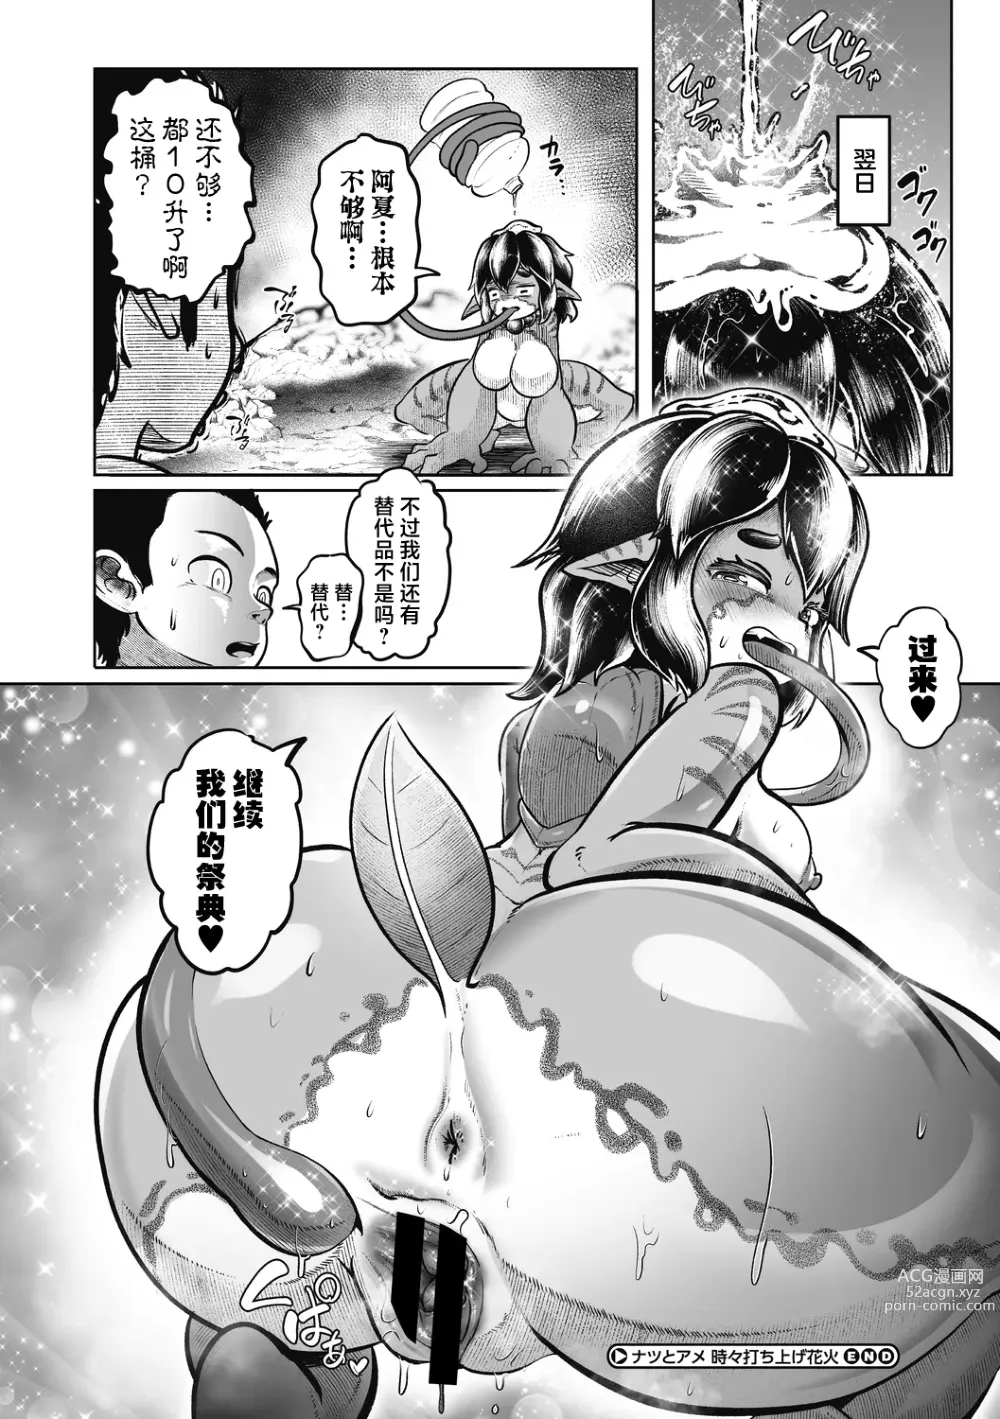 Page 19 of manga Natsu to Ame Tokidoki Uchiage Hanabi